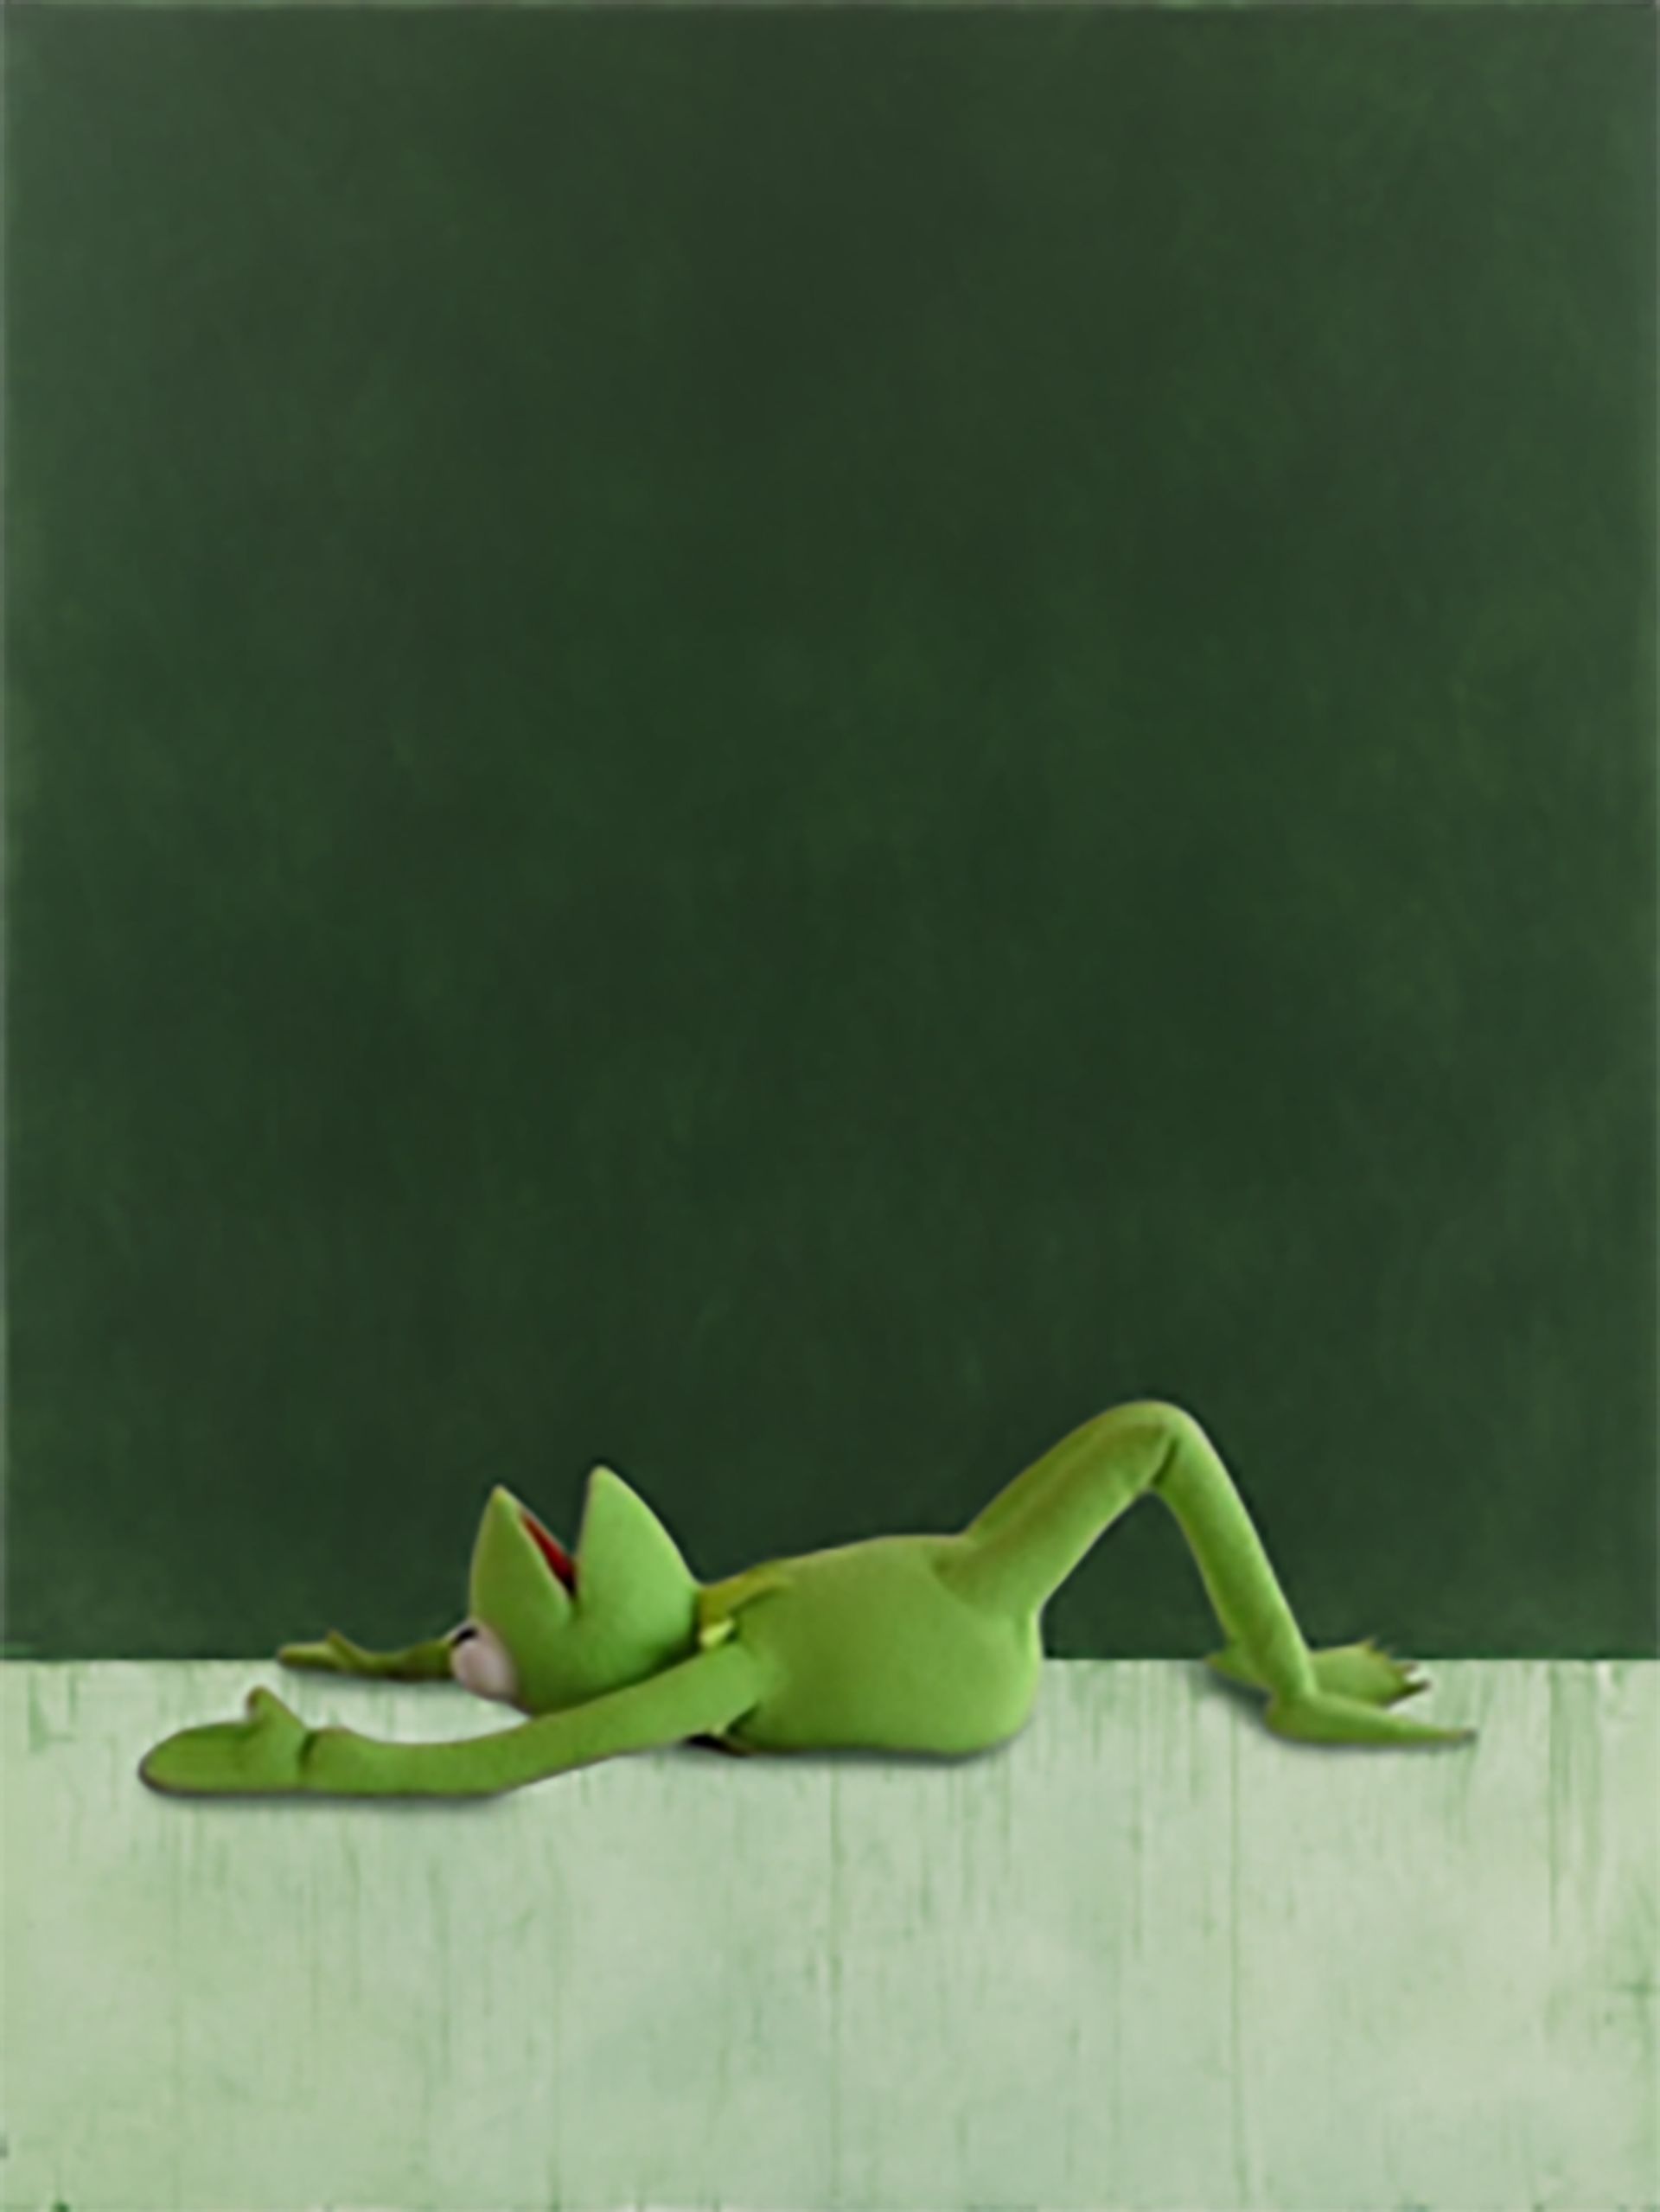 Kenny Schachter's NFT work Marden Kermit (2019) Courtesy of the artist